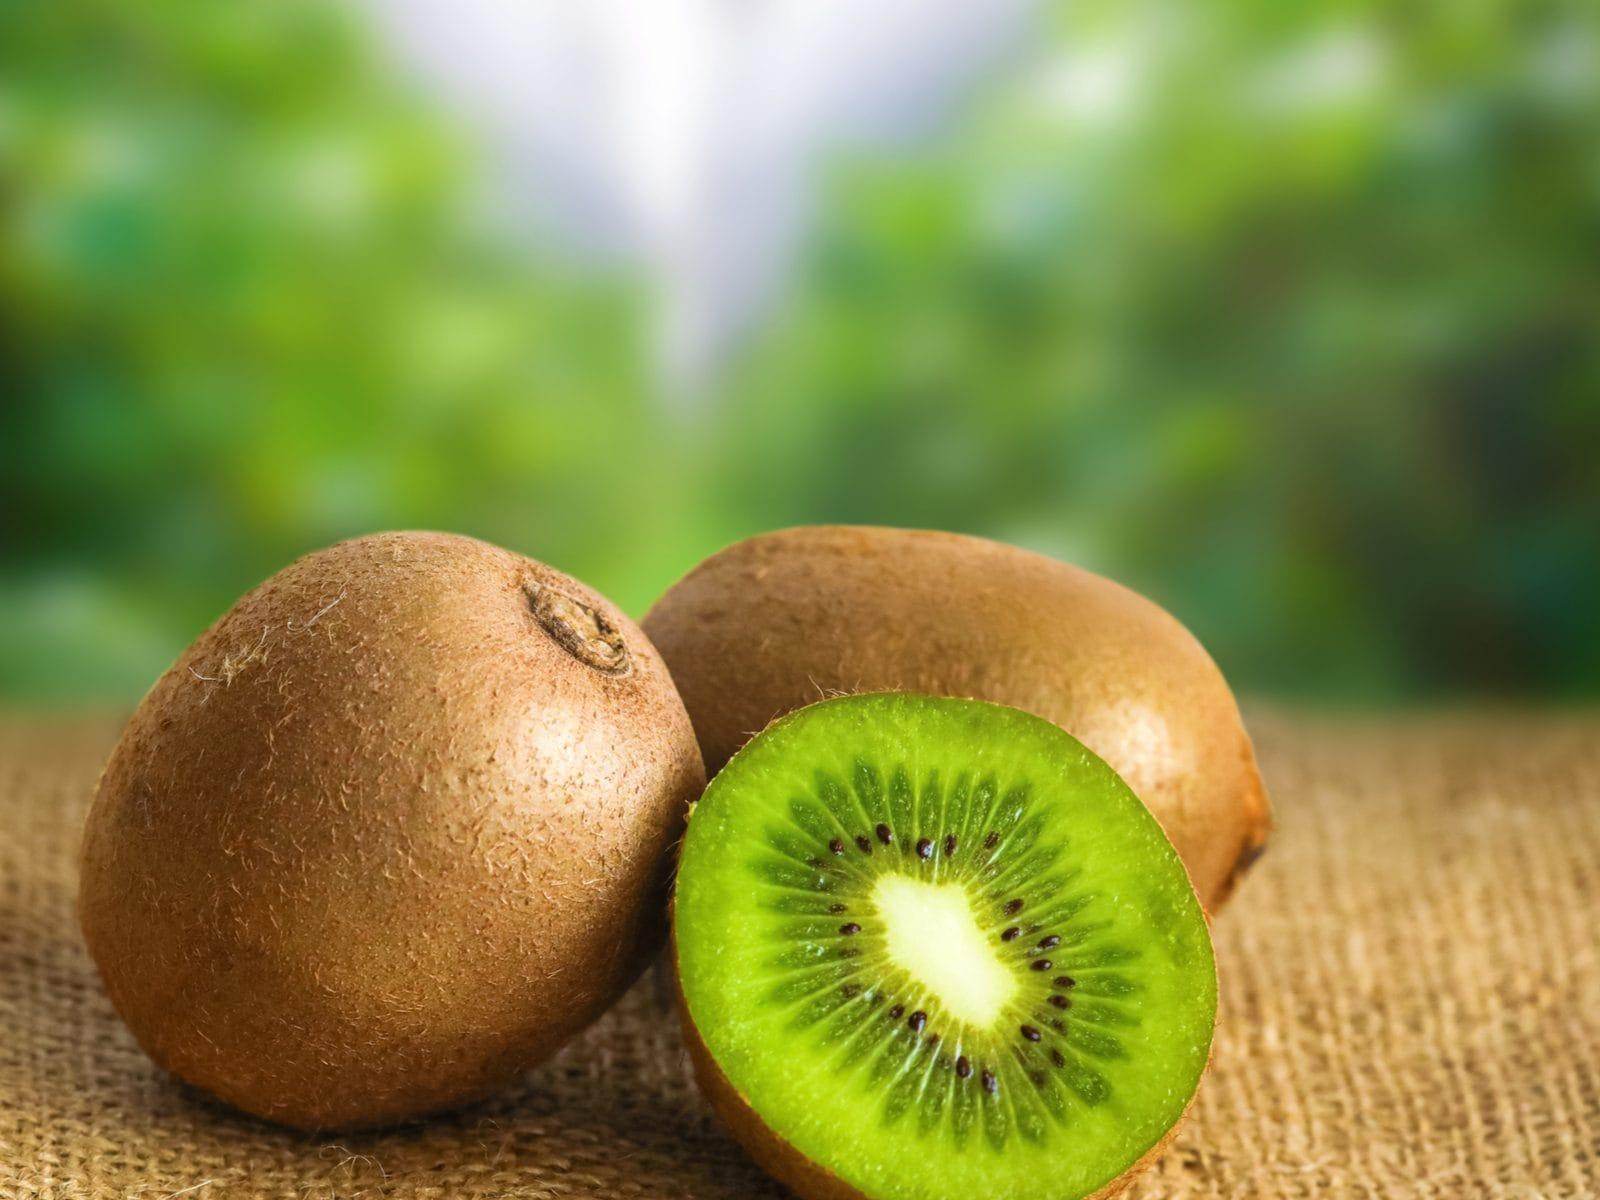 Hướng dẫn bảo quản kiwi, dâu tây trong tủ lạnh